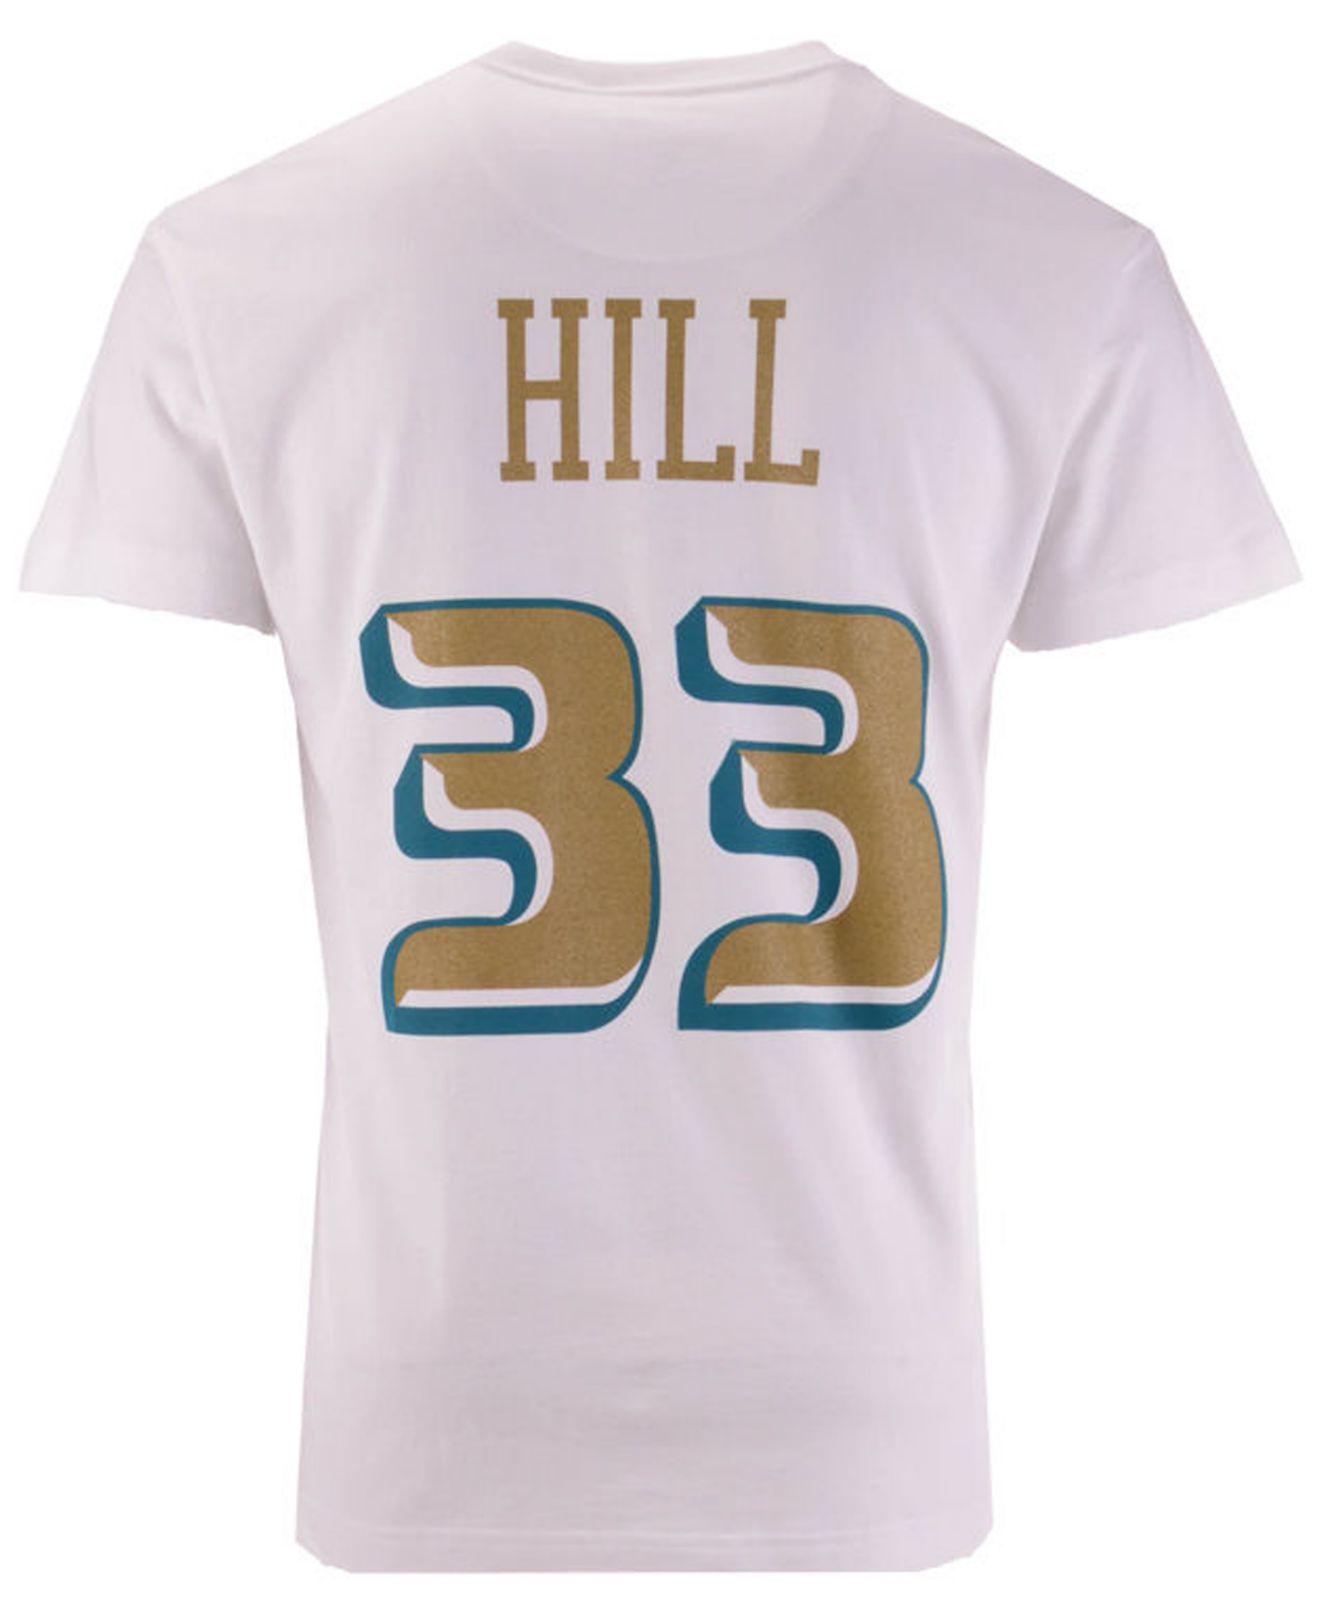 grant hill t shirt